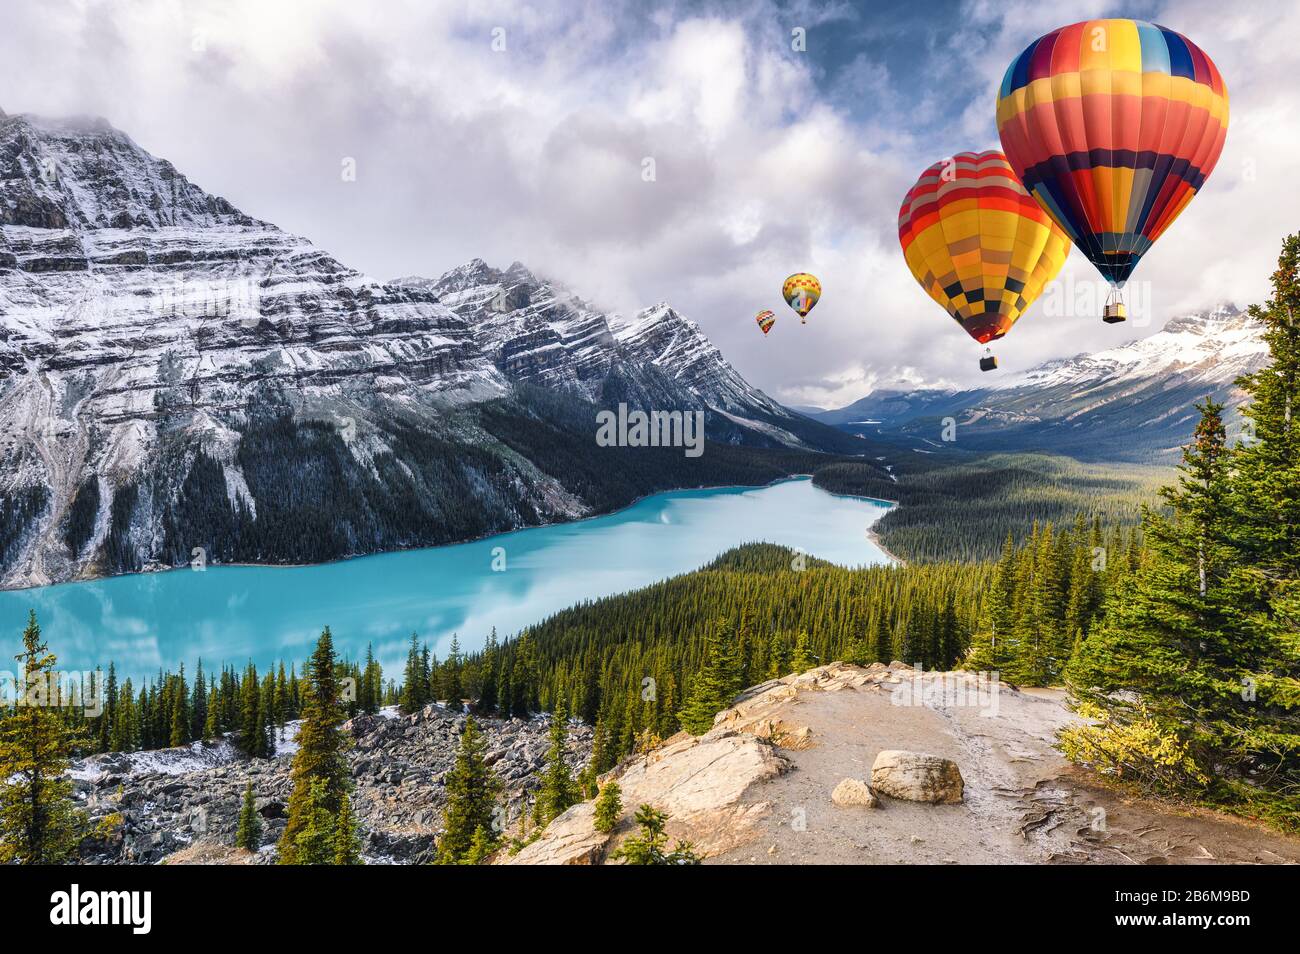 Les ballons à air chaud qui volent sur le lac Peyto ressemblent au renard  du parc national Banff au Canada Photo Stock - Alamy